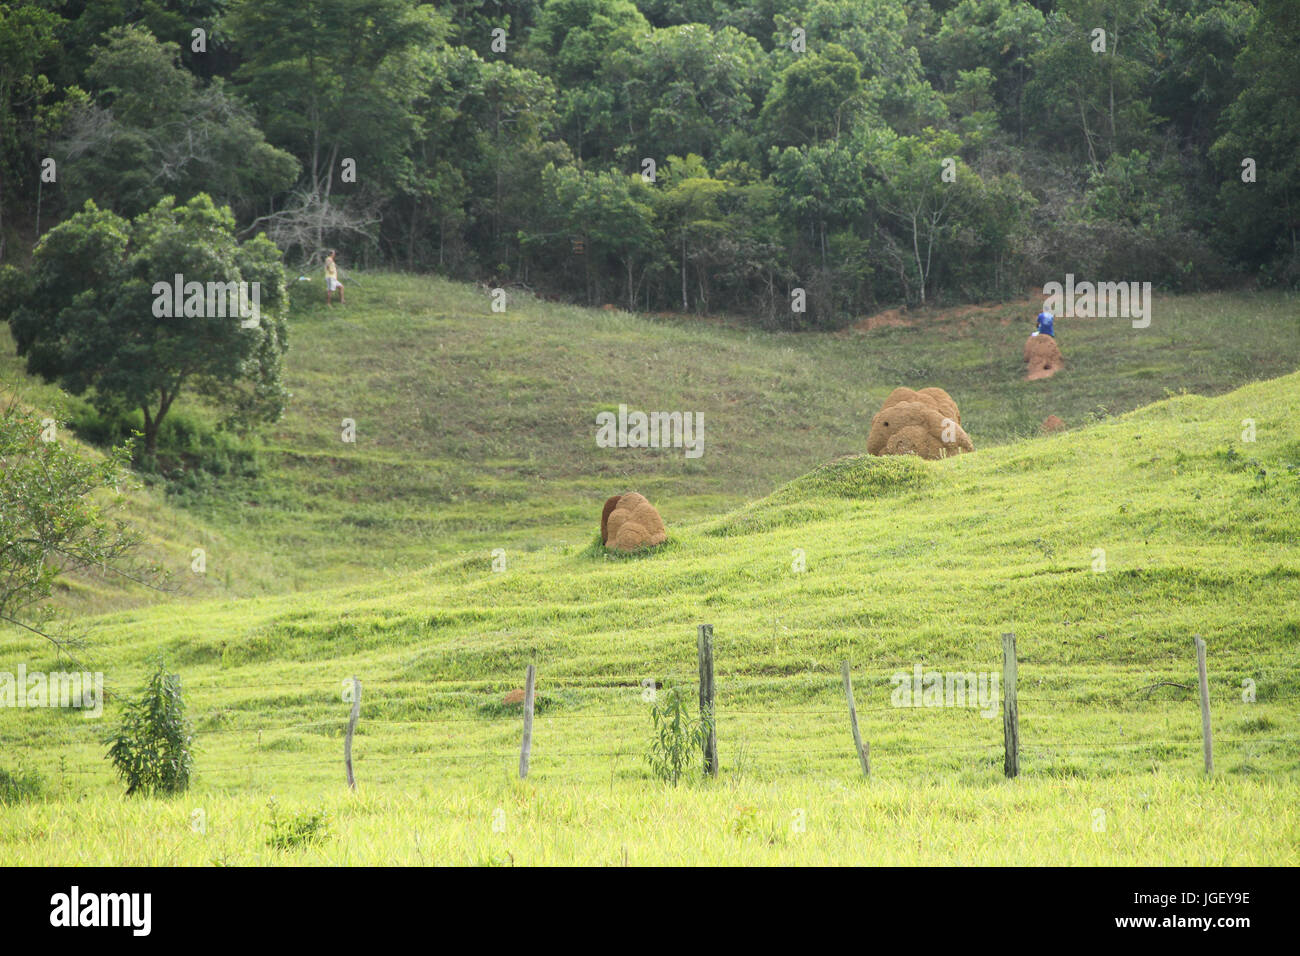 Menschen Jagd auf Vögel, Landschaft, Bauernhof, 2016 Merces, Minas Gerais, Brasilien. Stockfoto